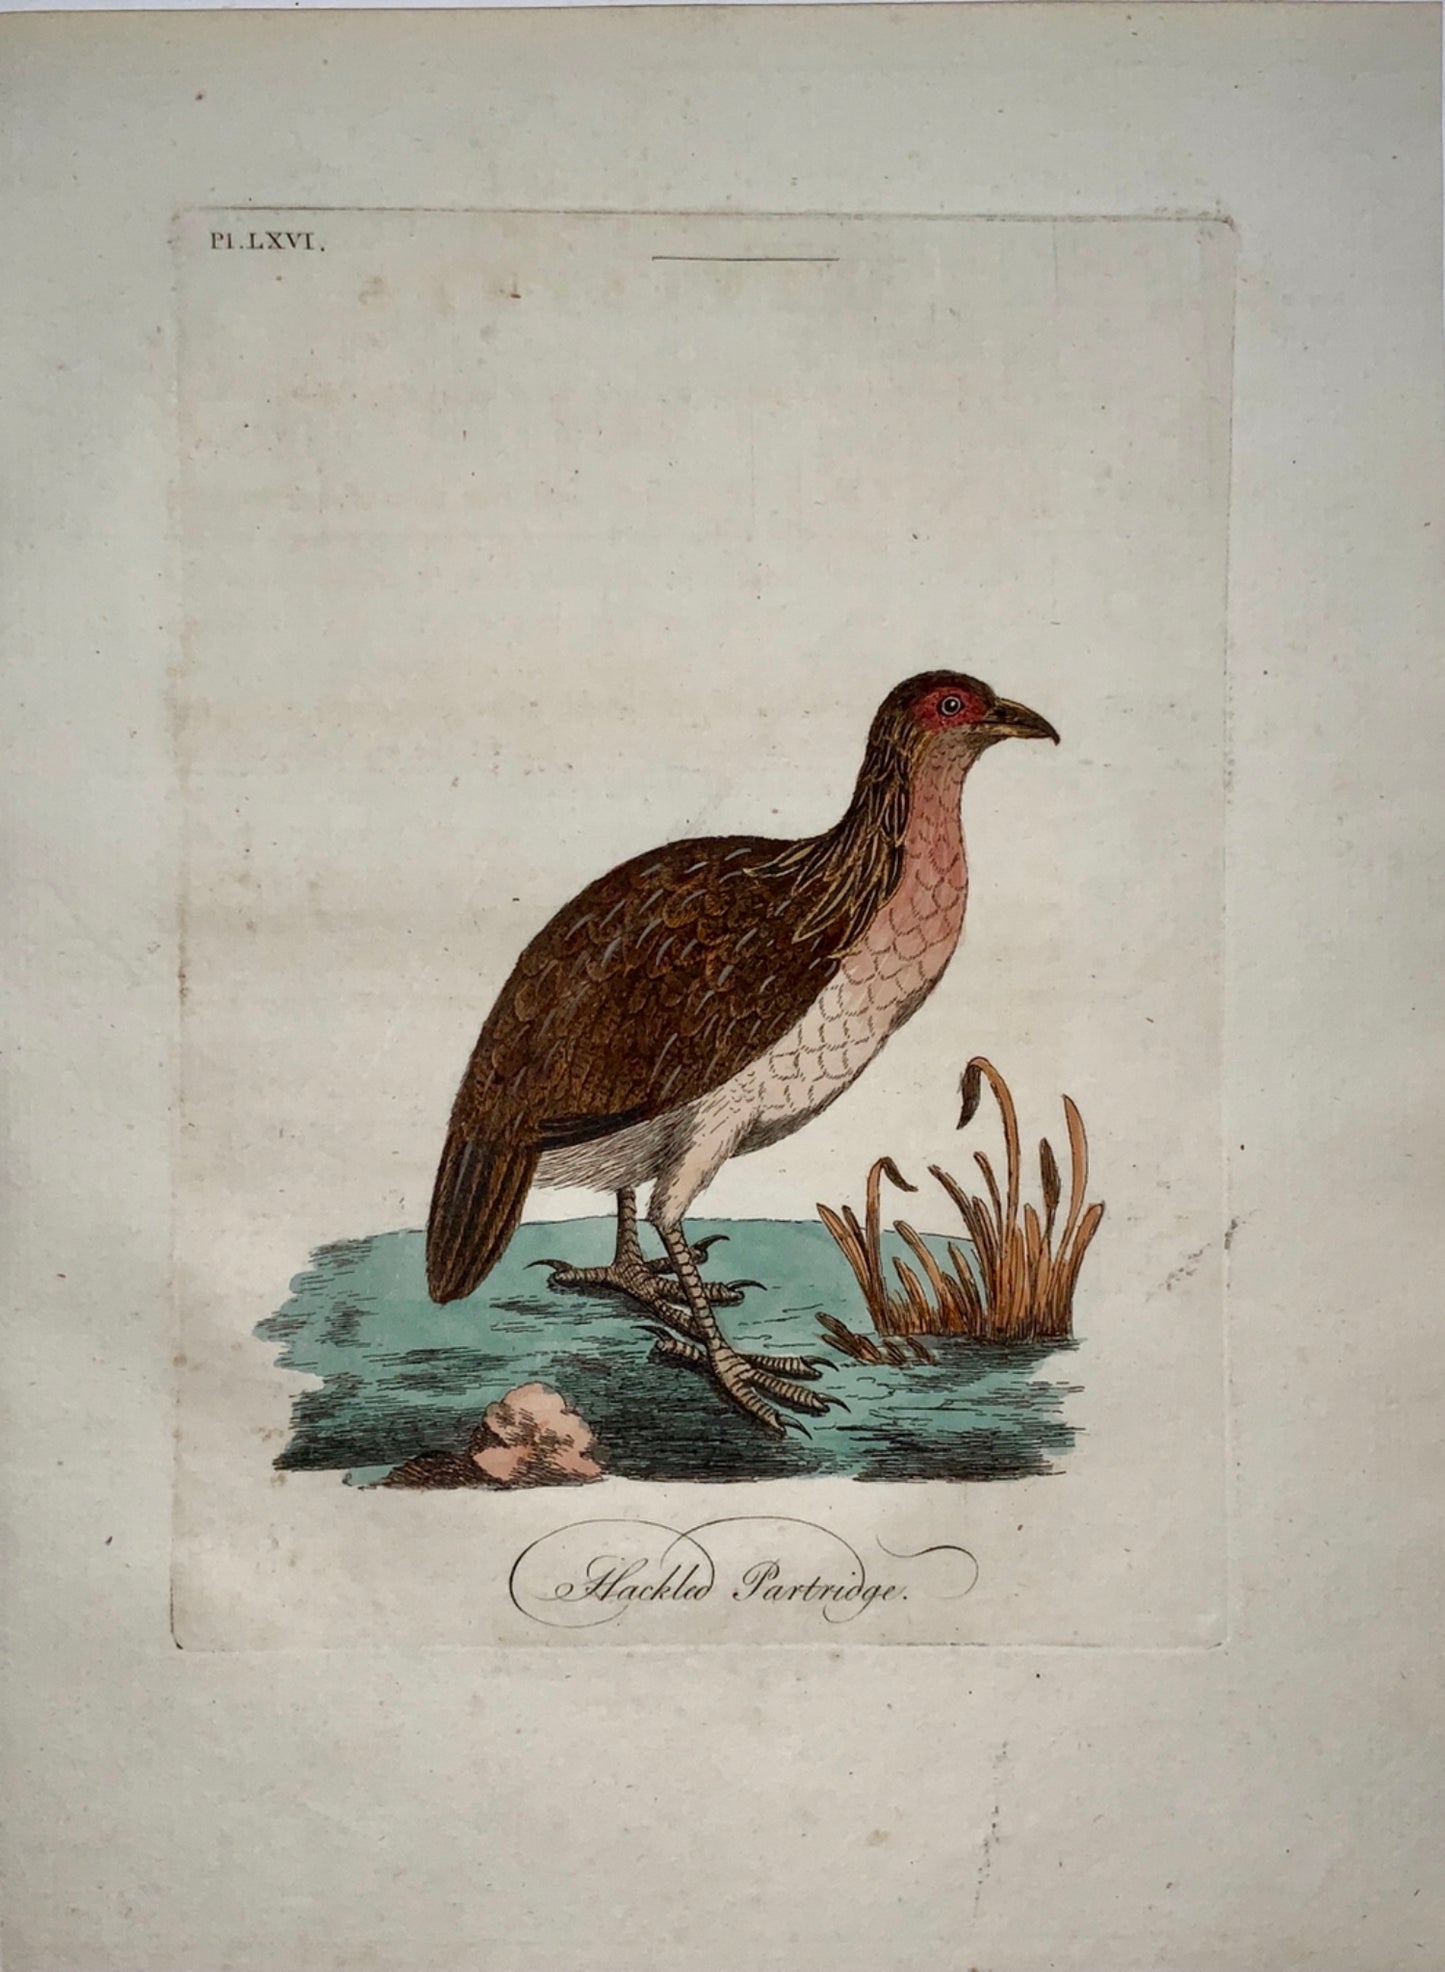 1785 John Latham - Synopsis - Hackled PARTRIDGE - hand coloured engraving - Ornithology